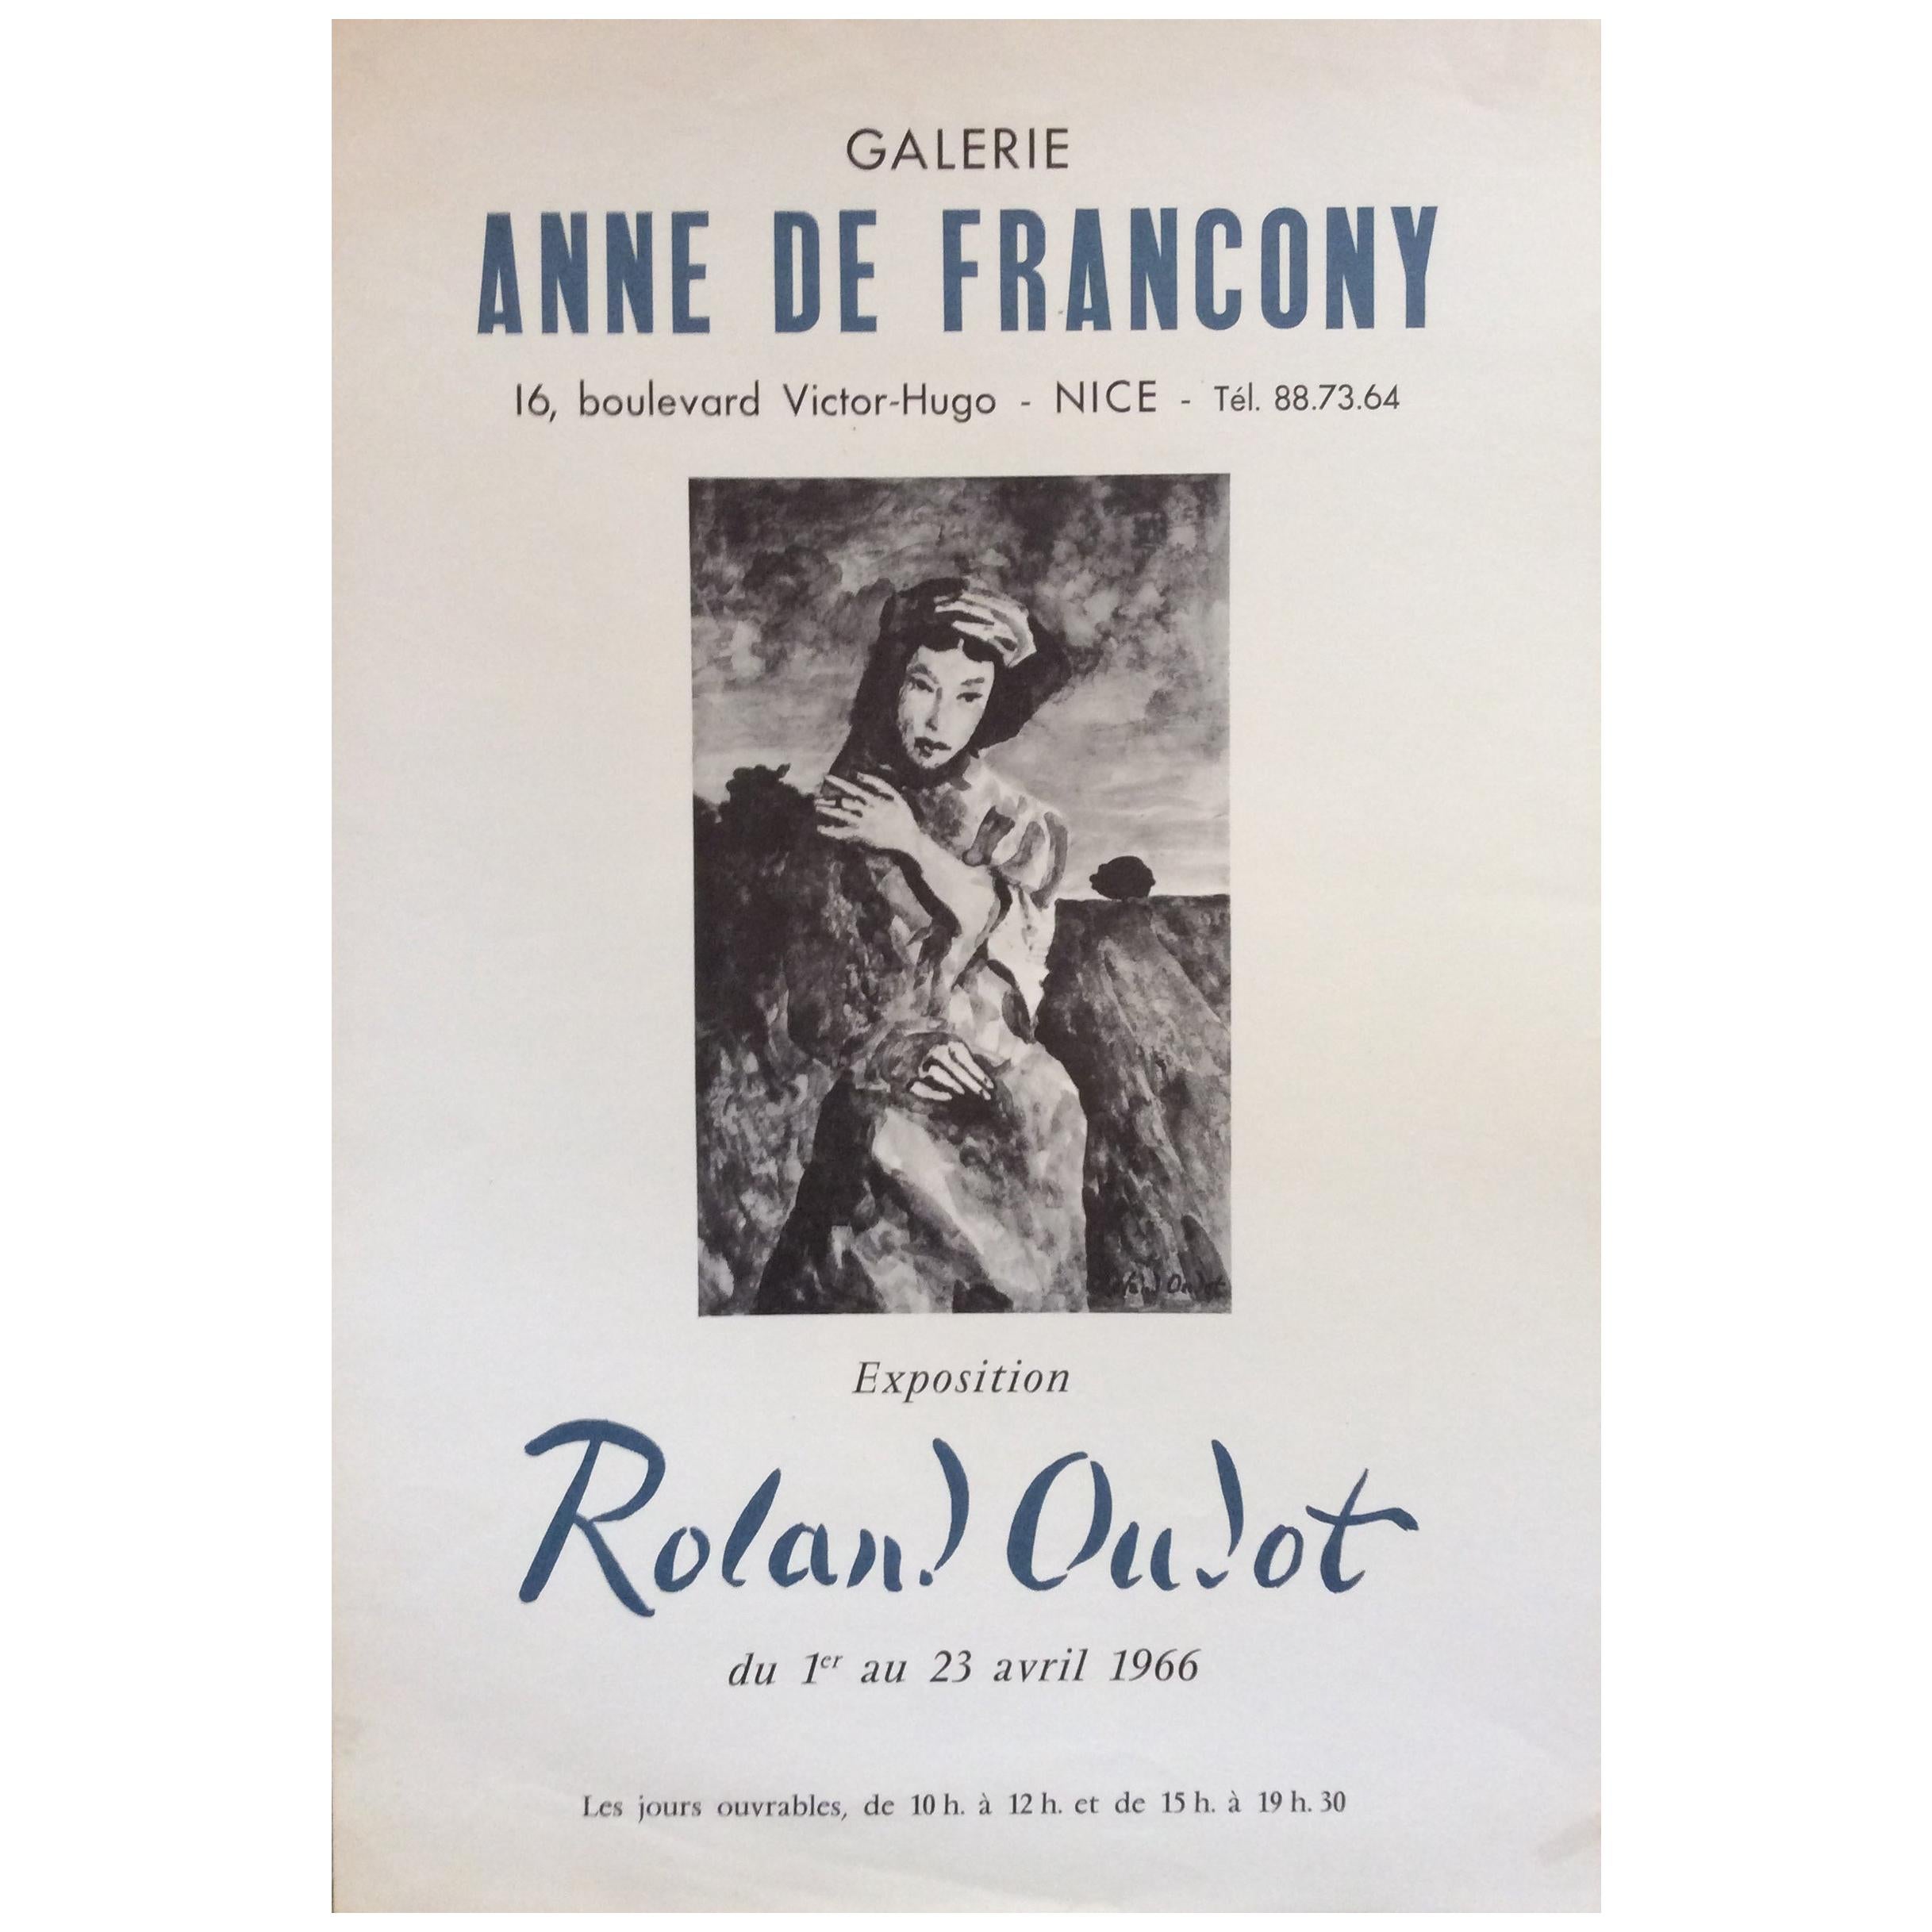 Midcentury Original "Anne De Francony Galerie" Portrait Poster by Roland Oublot For Sale